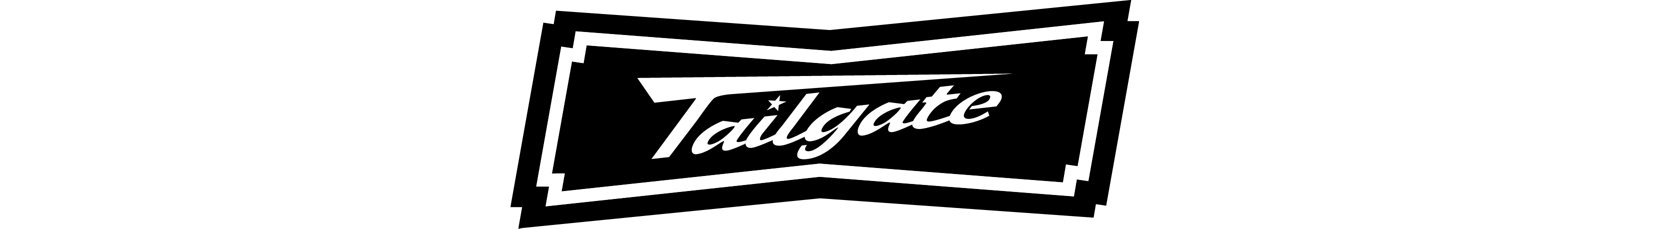 tailgate logo 